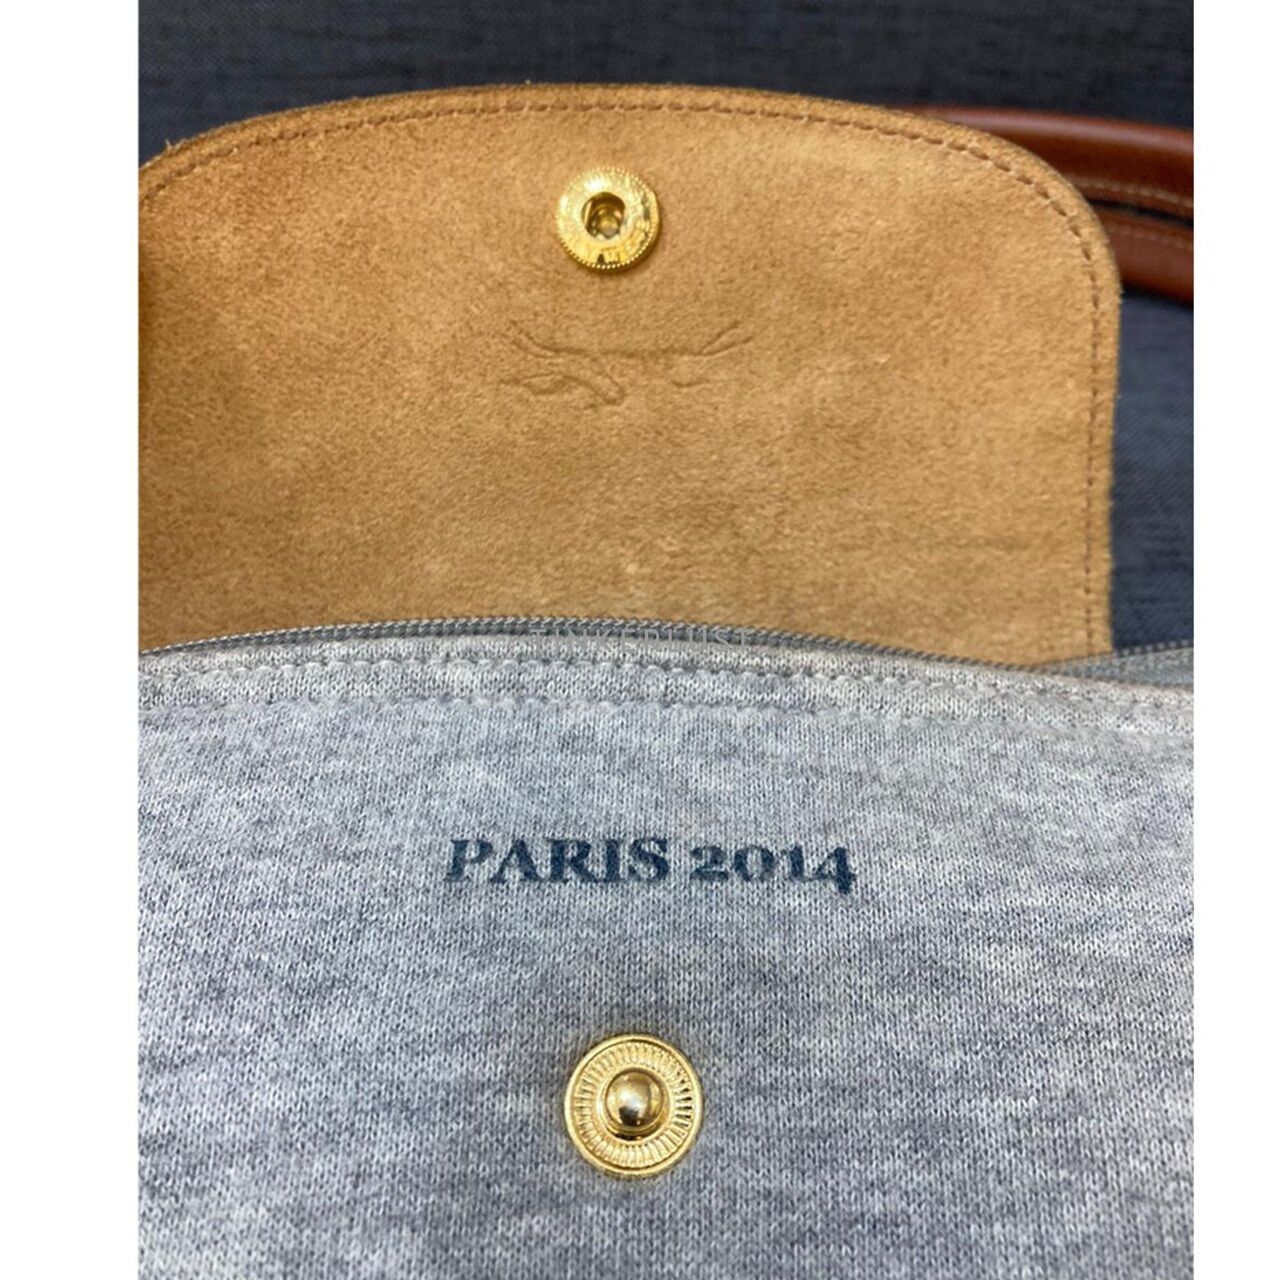 Longchamp Le Pliage Rive Droite Grey 2014 Tote Bag